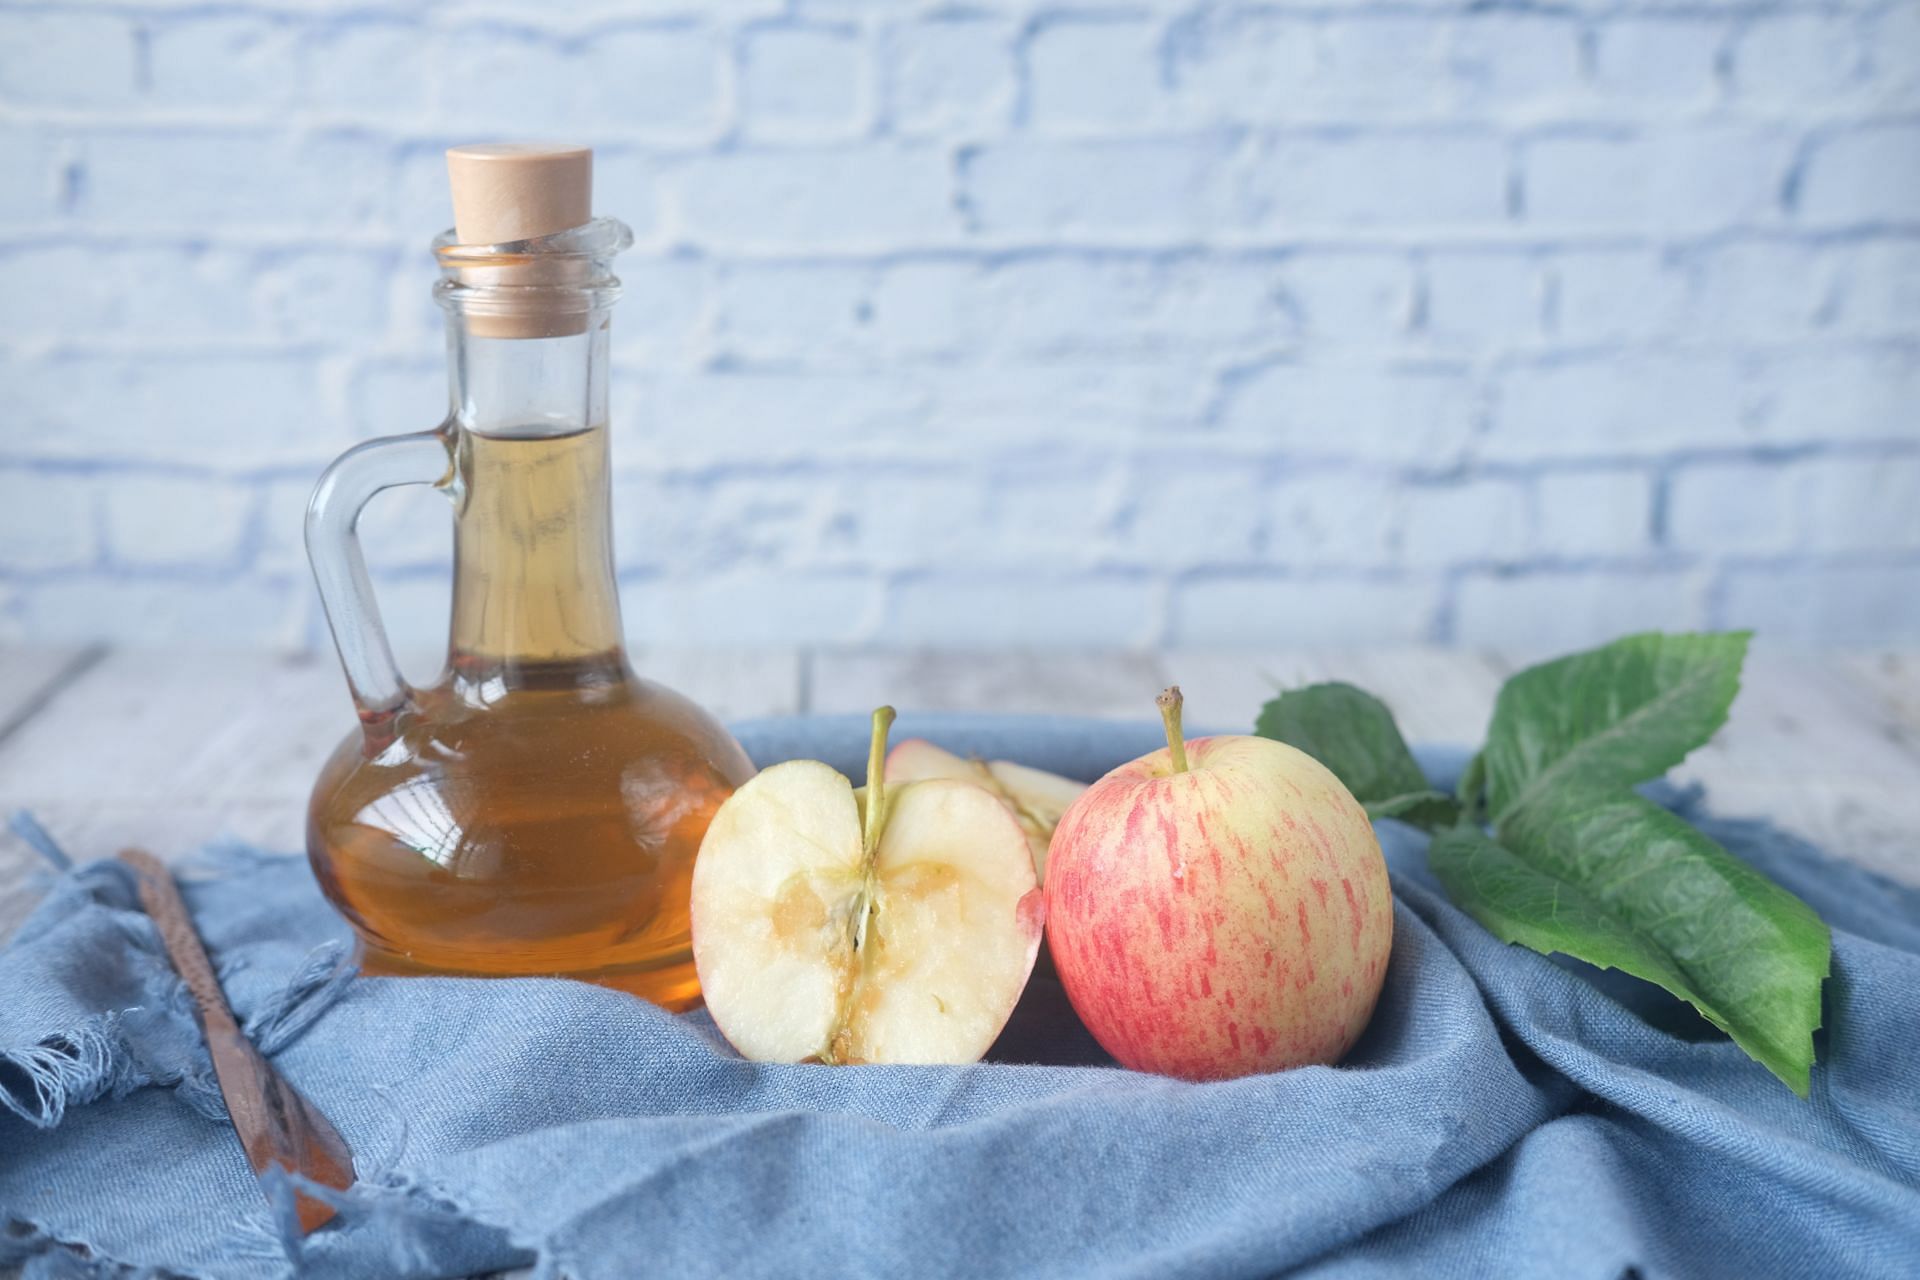 Apple cider vinegar is usually used to improve digestion. (Image via Unsplash/Towfiqu Barbhuiya)